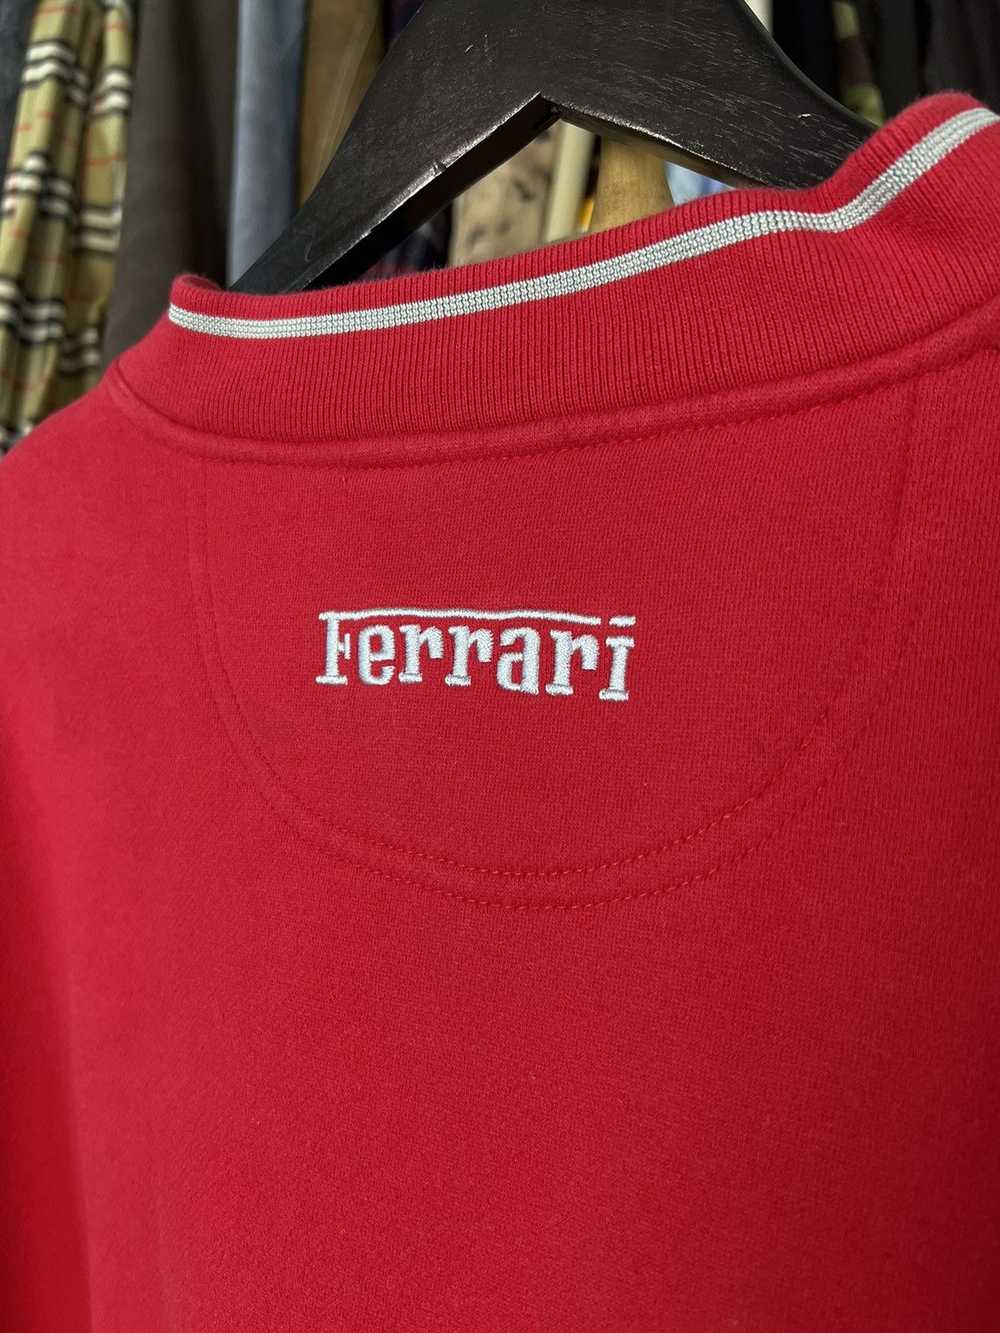 Ferrari × Racing × Vintage Vintage Ferrari Red V … - image 4